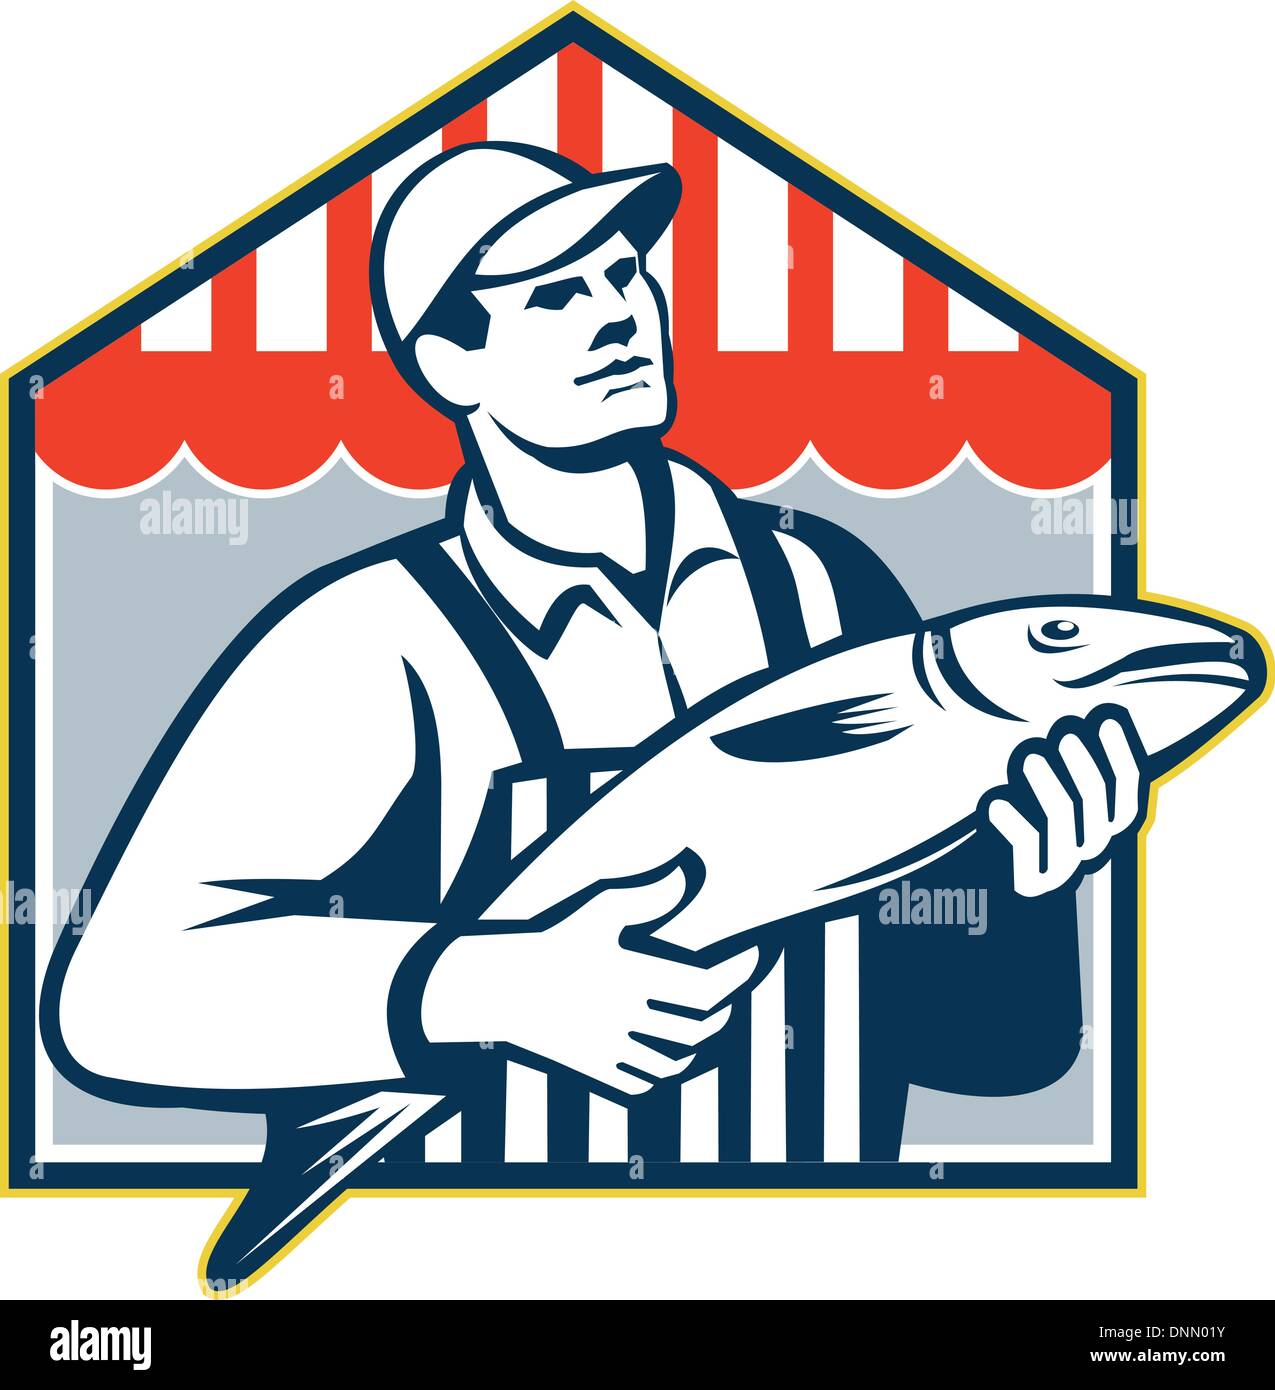 Illustration de style rétro d'un boucher poissonnier poissons travailleur face à l'avant sur fond isolé fait en style rétro. Illustration de Vecteur